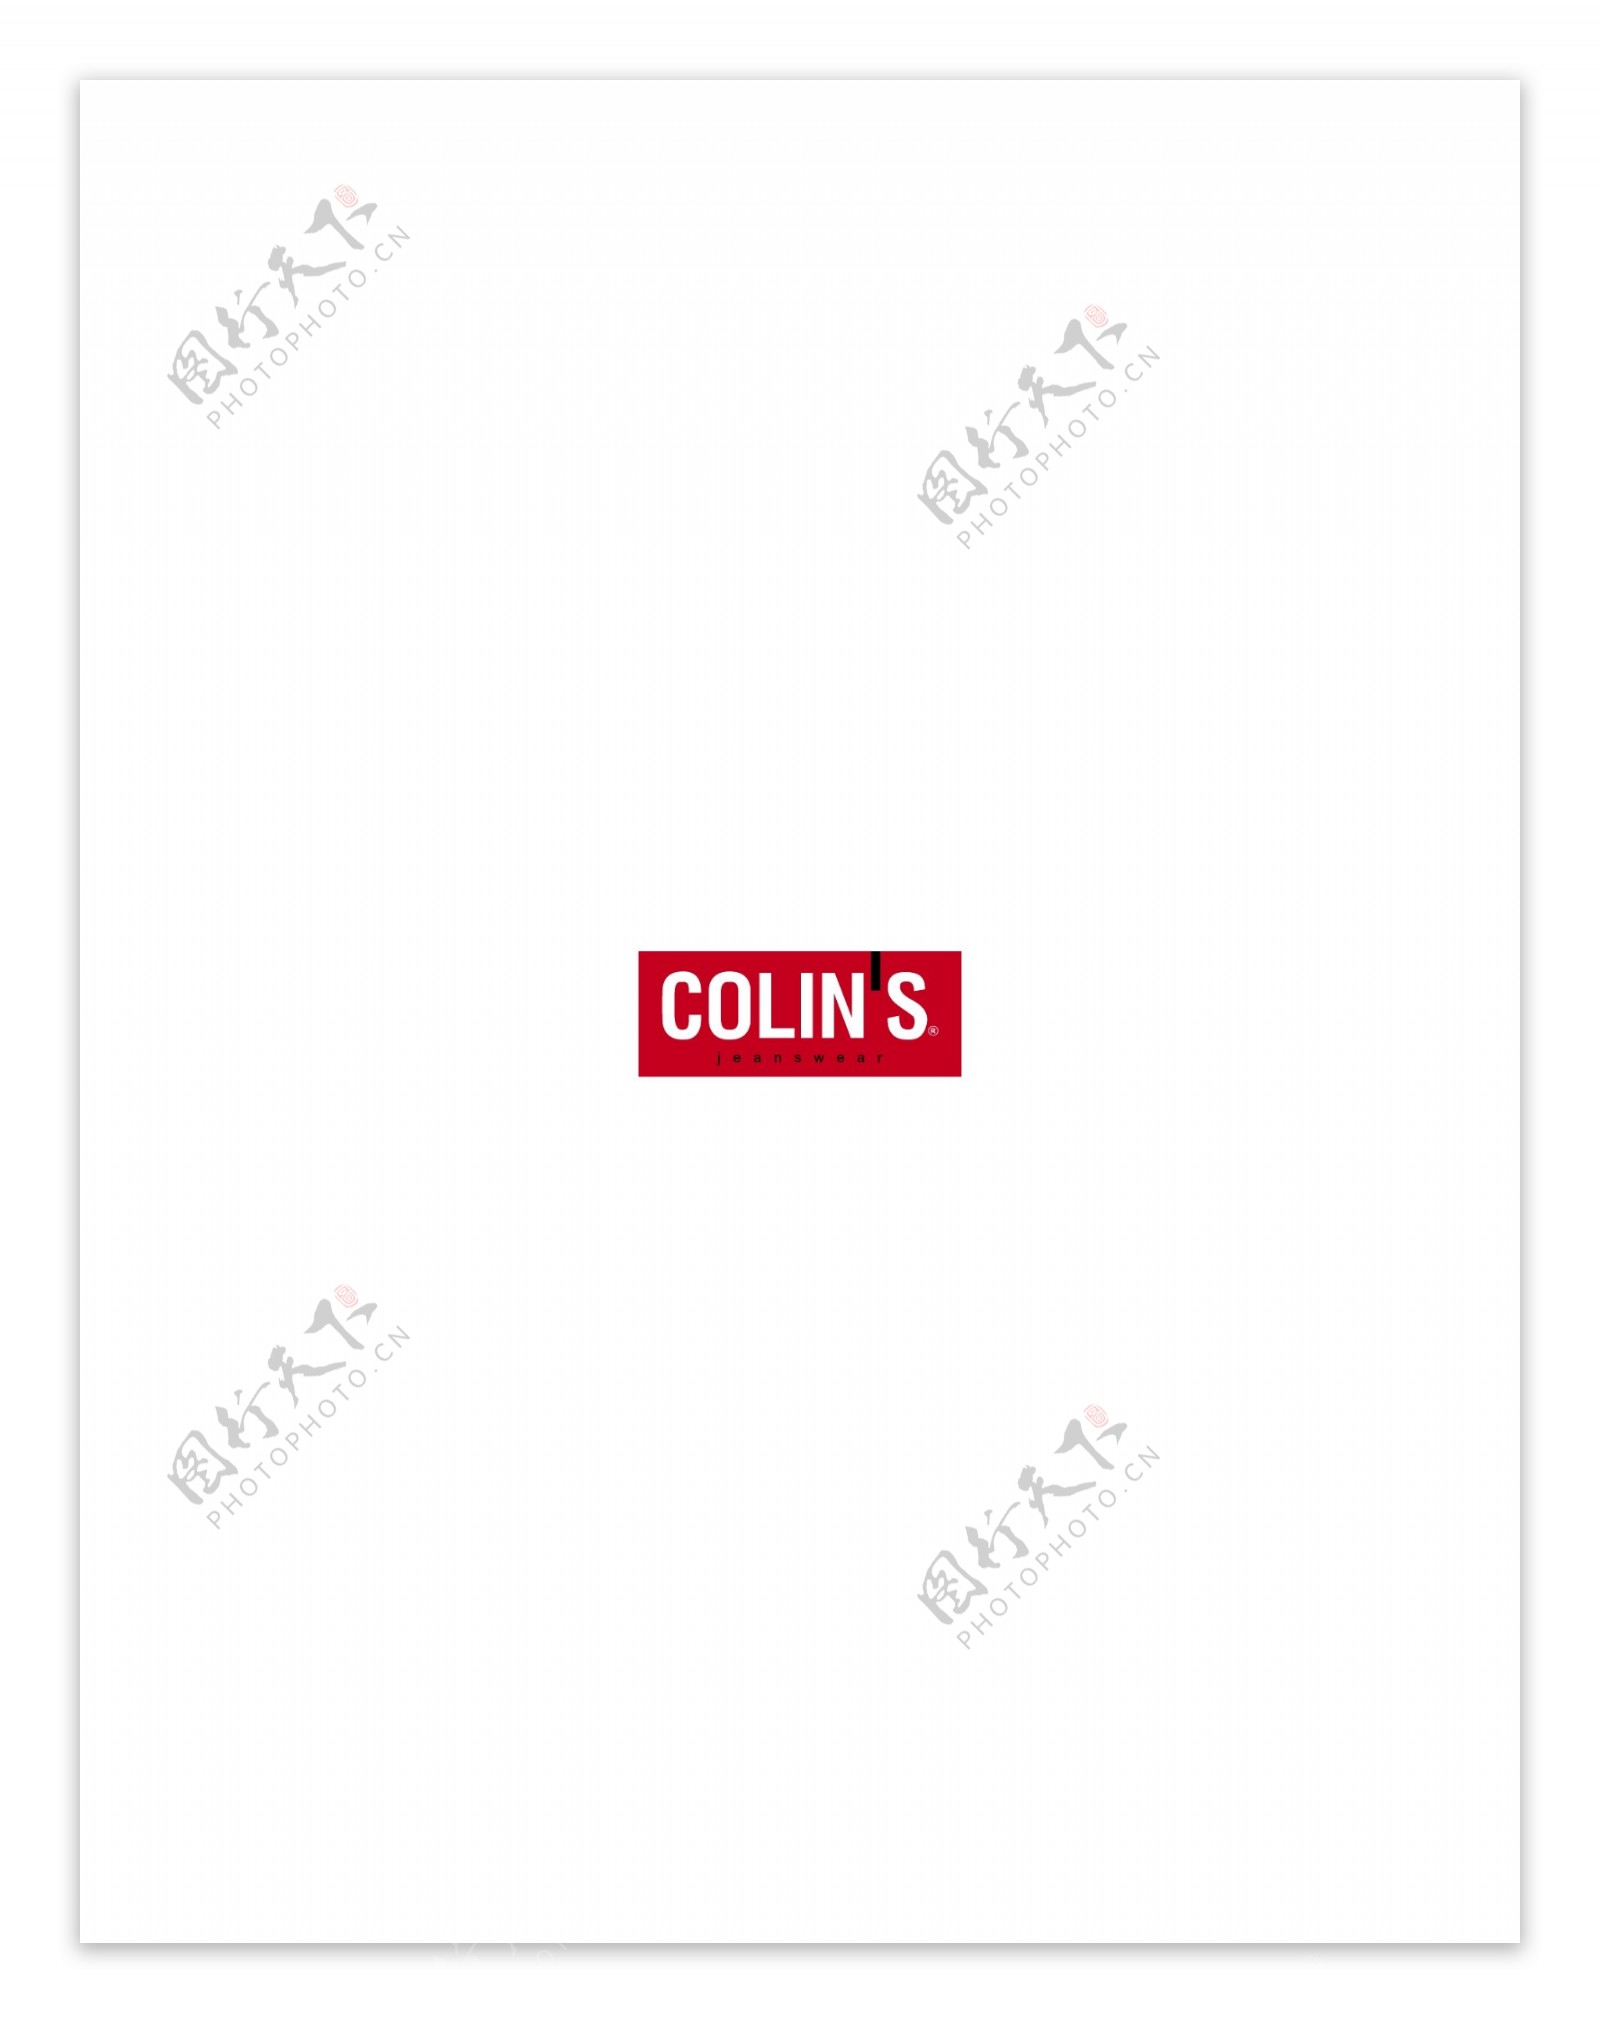 Colins1logo设计欣赏Colins1服饰品牌标志下载标志设计欣赏